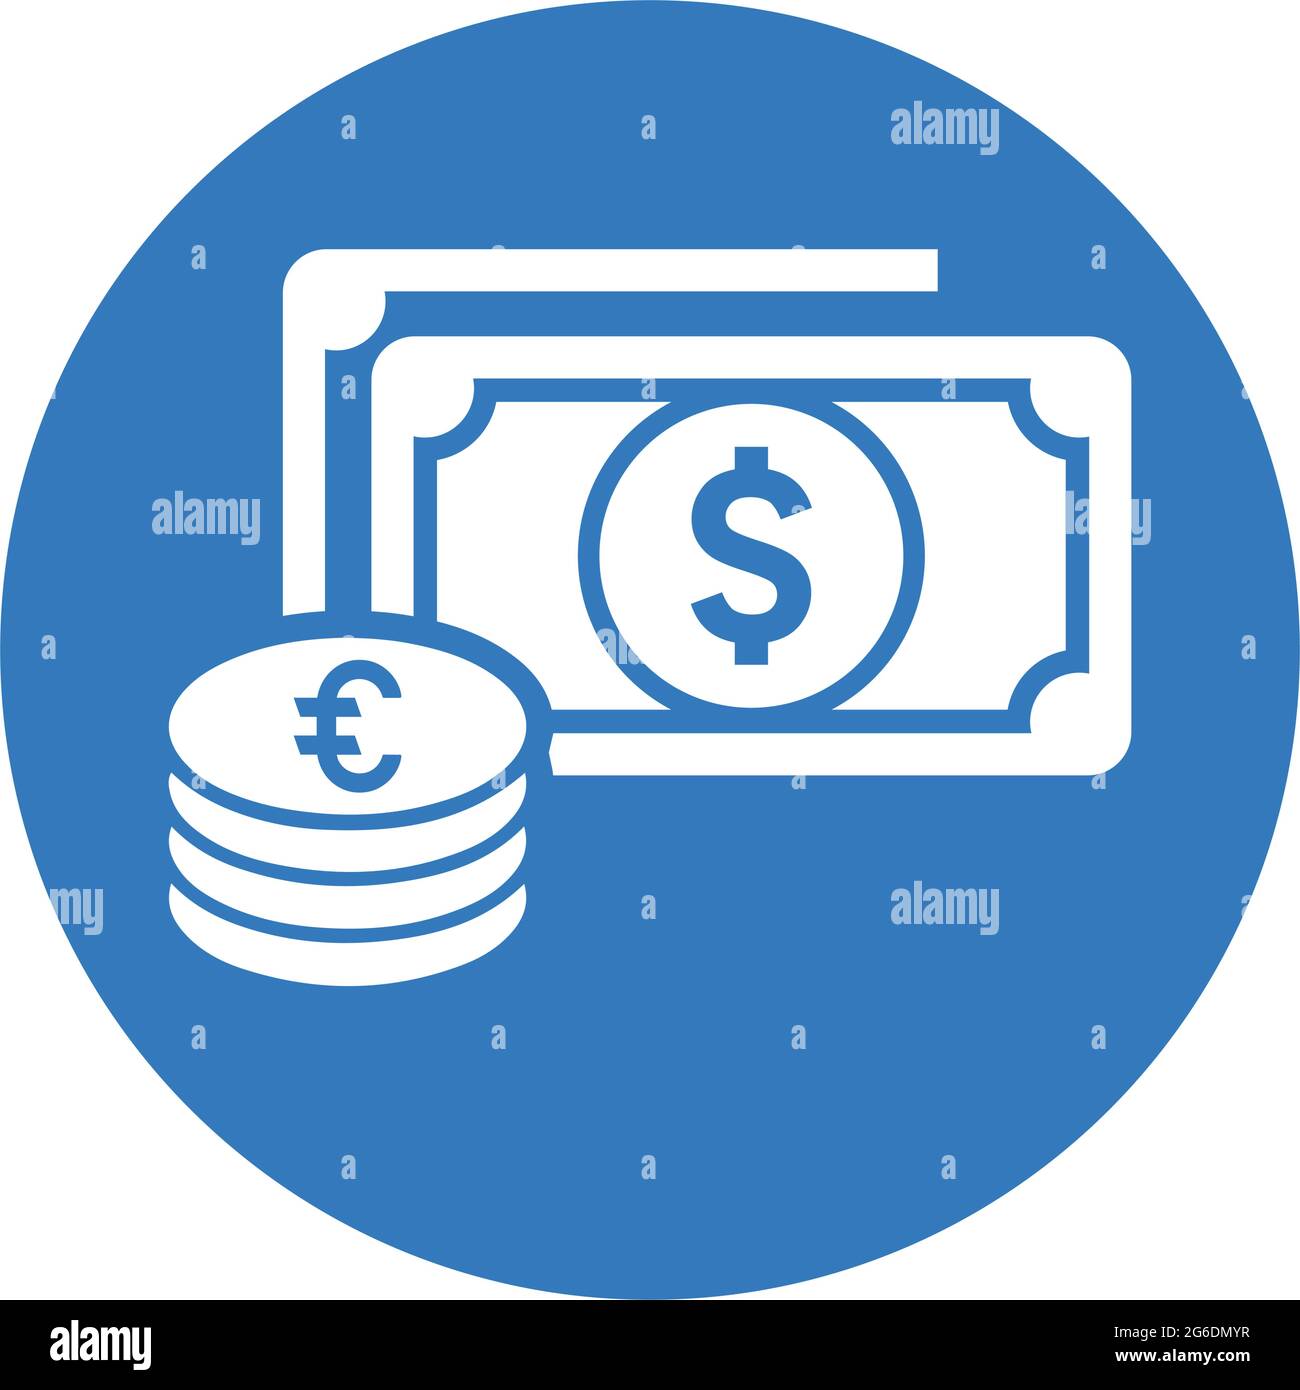 Das Symbol für Bargeld, Finanzen, Geld ist auf weißem Hintergrund isoliert. Verwendung für Grafik- und Webdesign oder kommerzielle Zwecke. Vektor-EPS-Datei. Stock Vektor